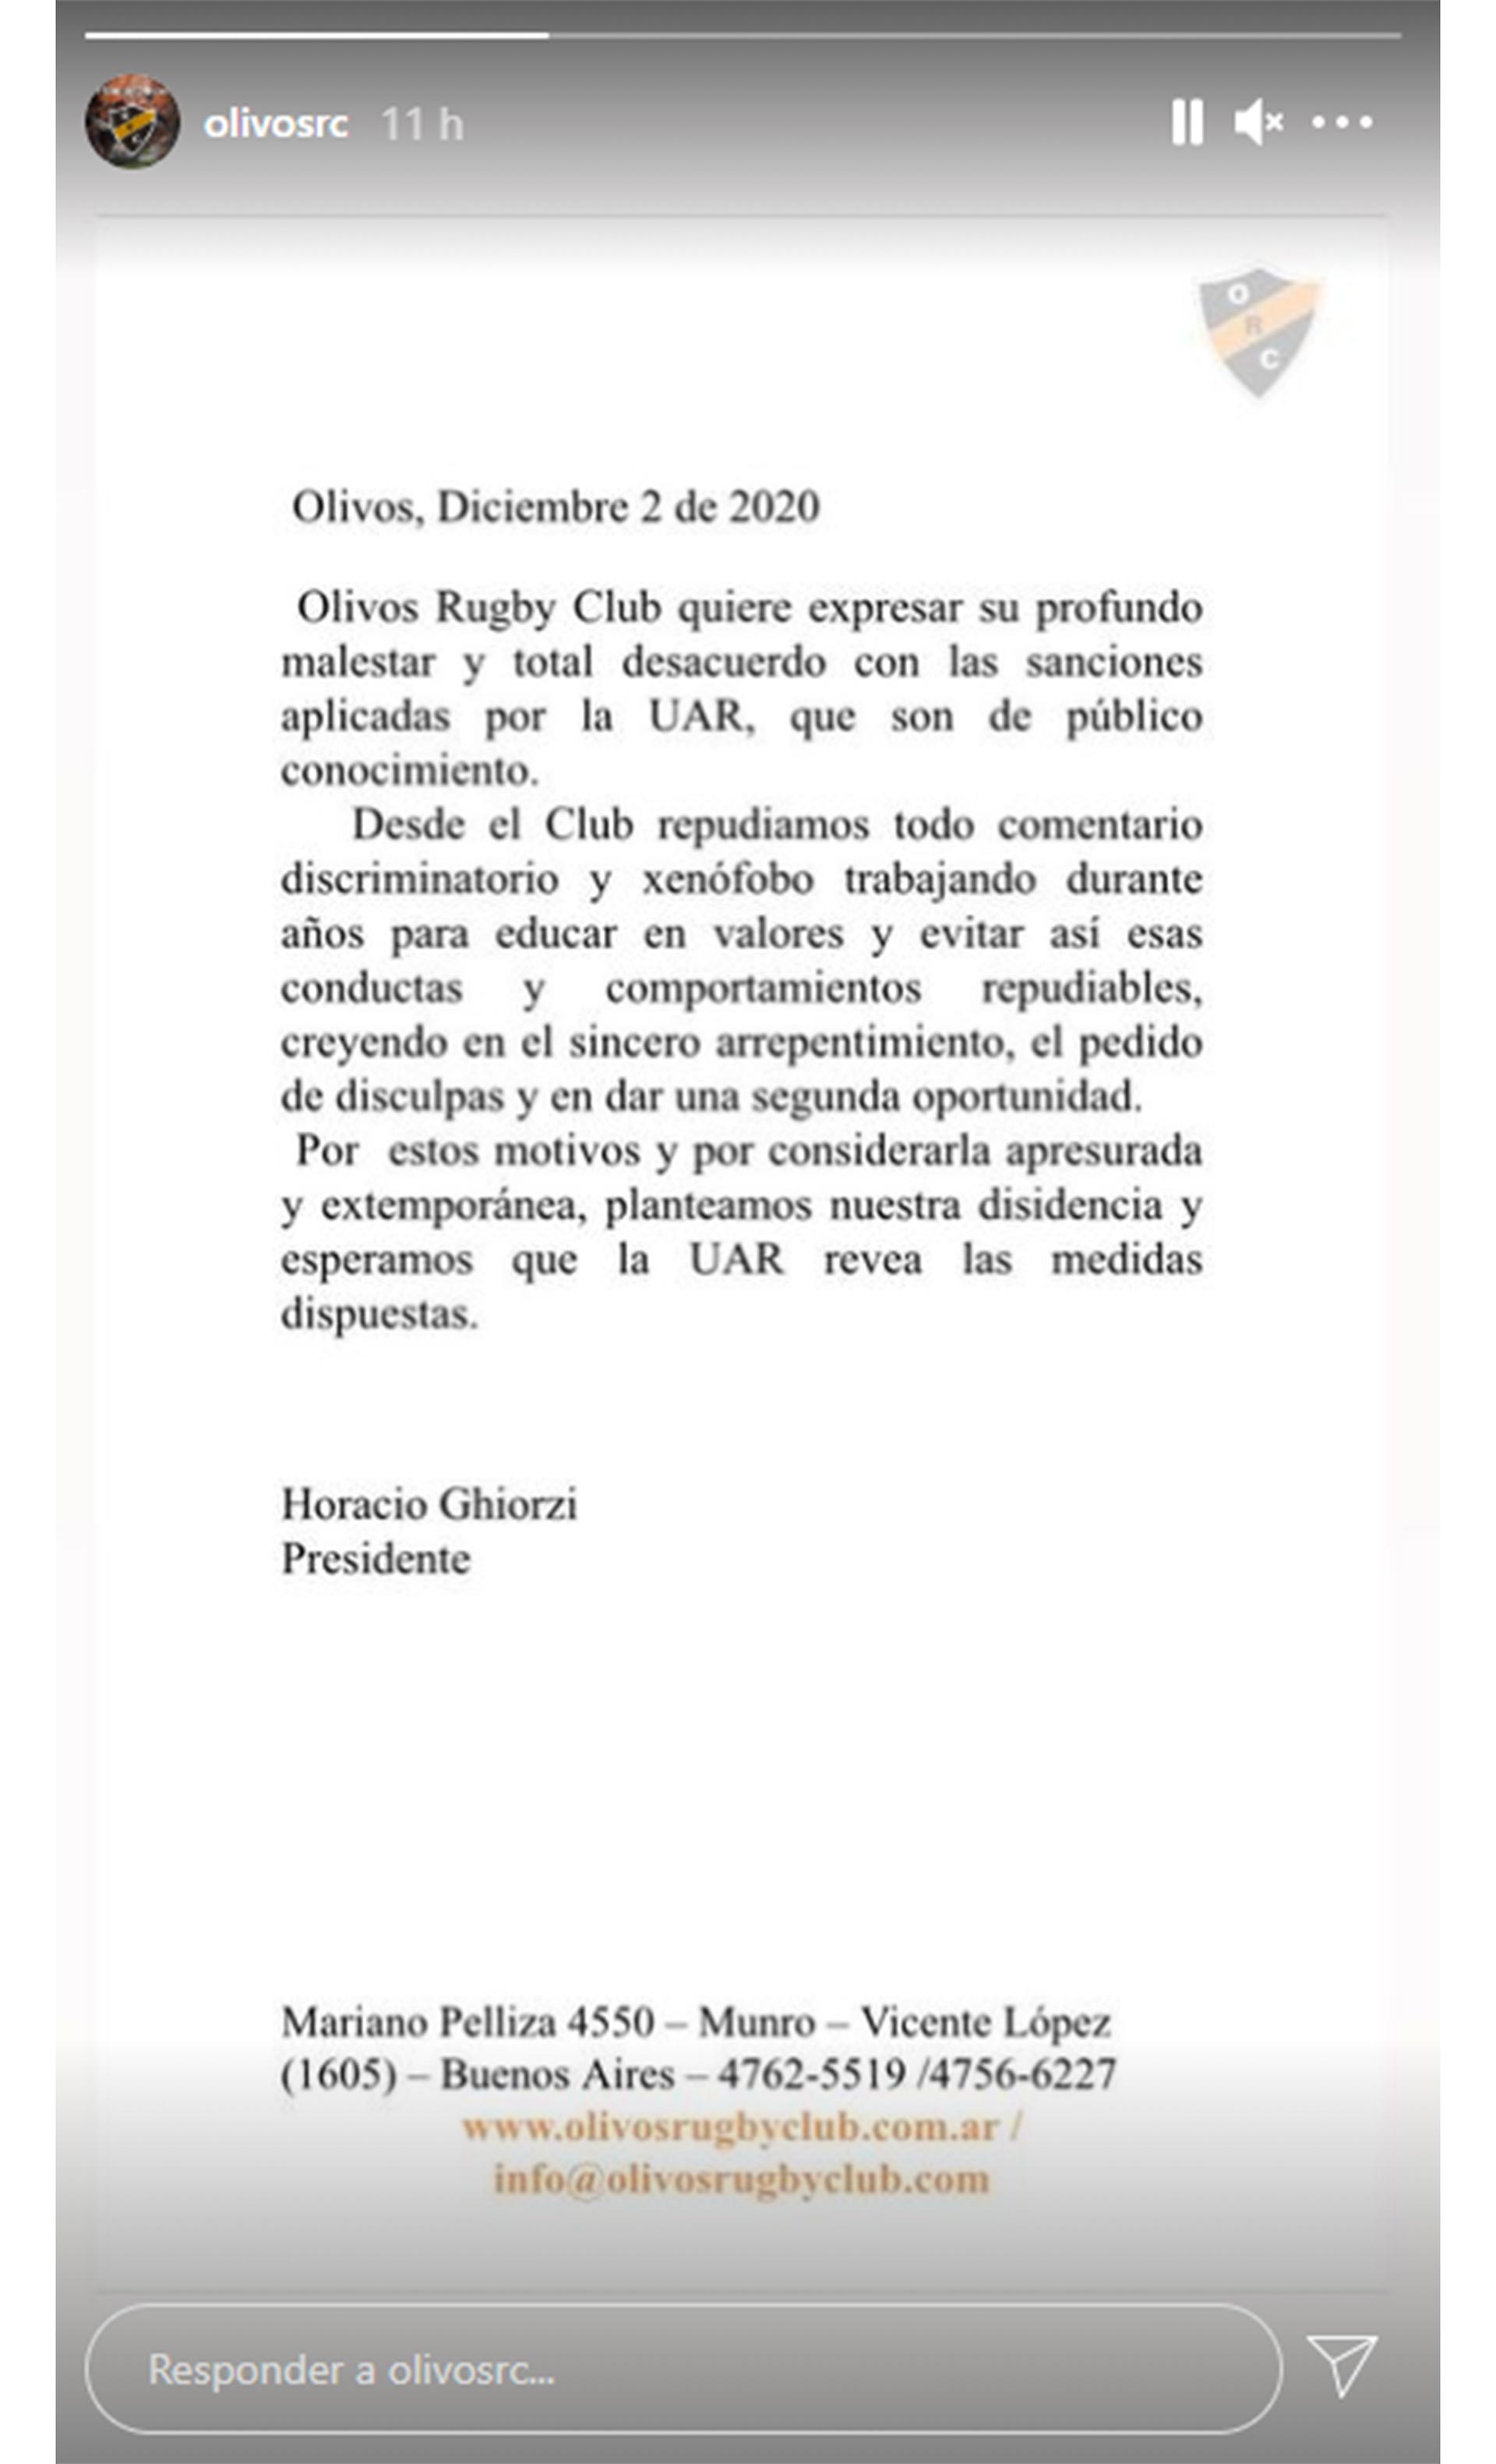 El comunicado de Olivos Rugby Club